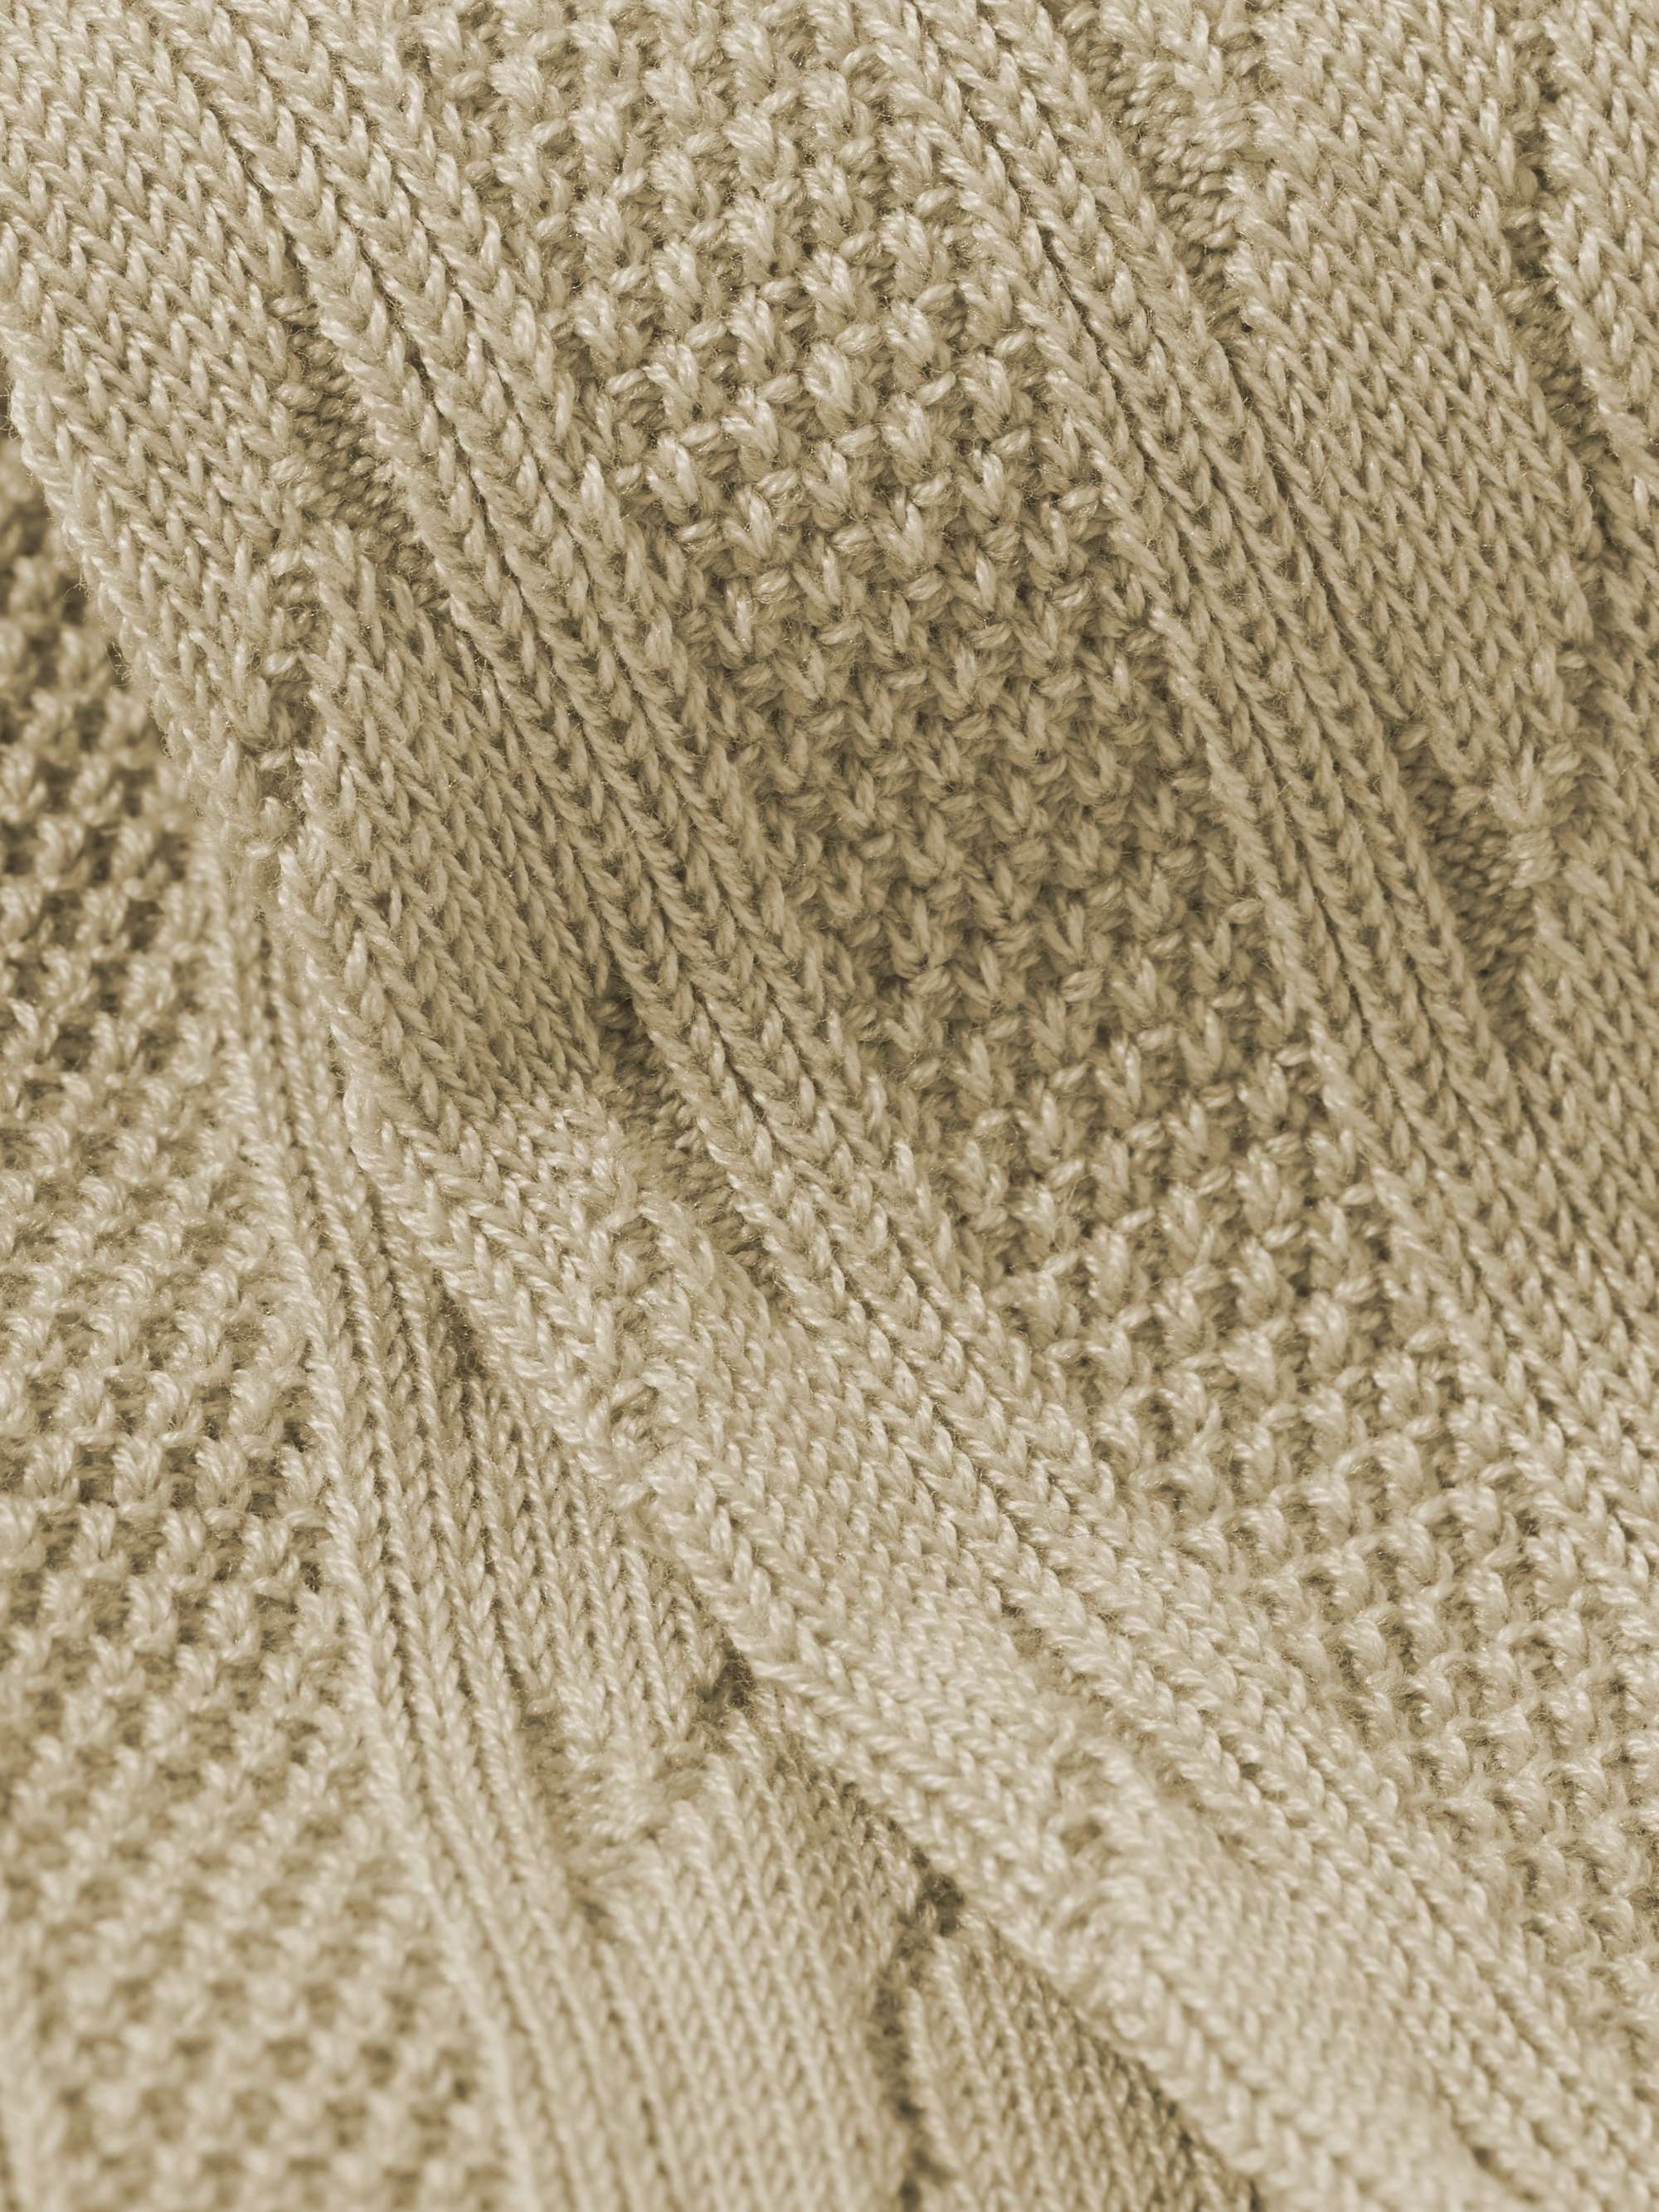 MR P. Cable-Knit Cotton-Blend Socks